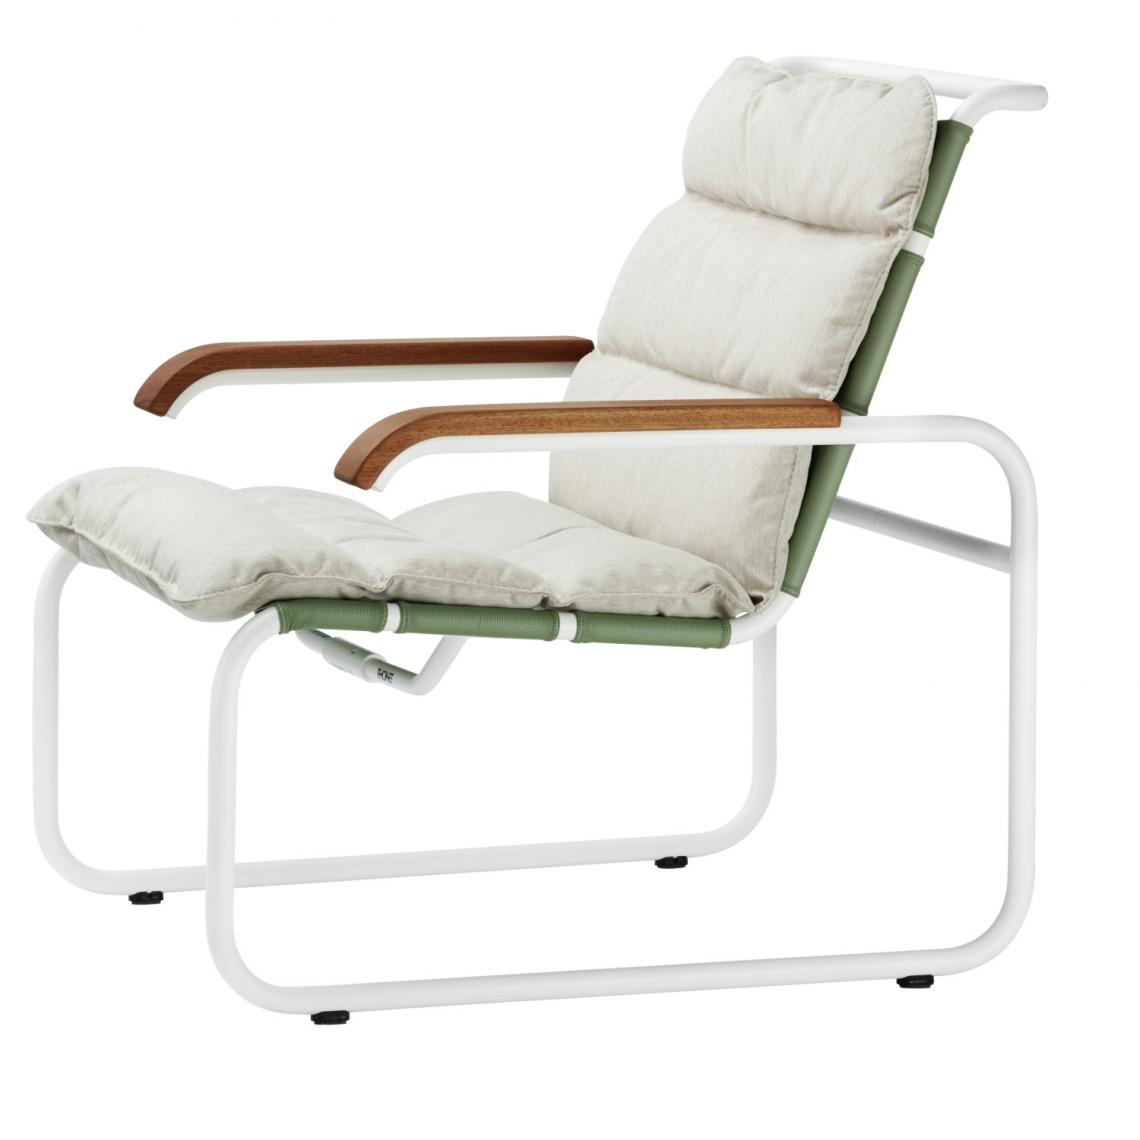 Thonet - Coussin pour chaise longue S 35 N All Seasons - nature - Coussins, galettes de jardin